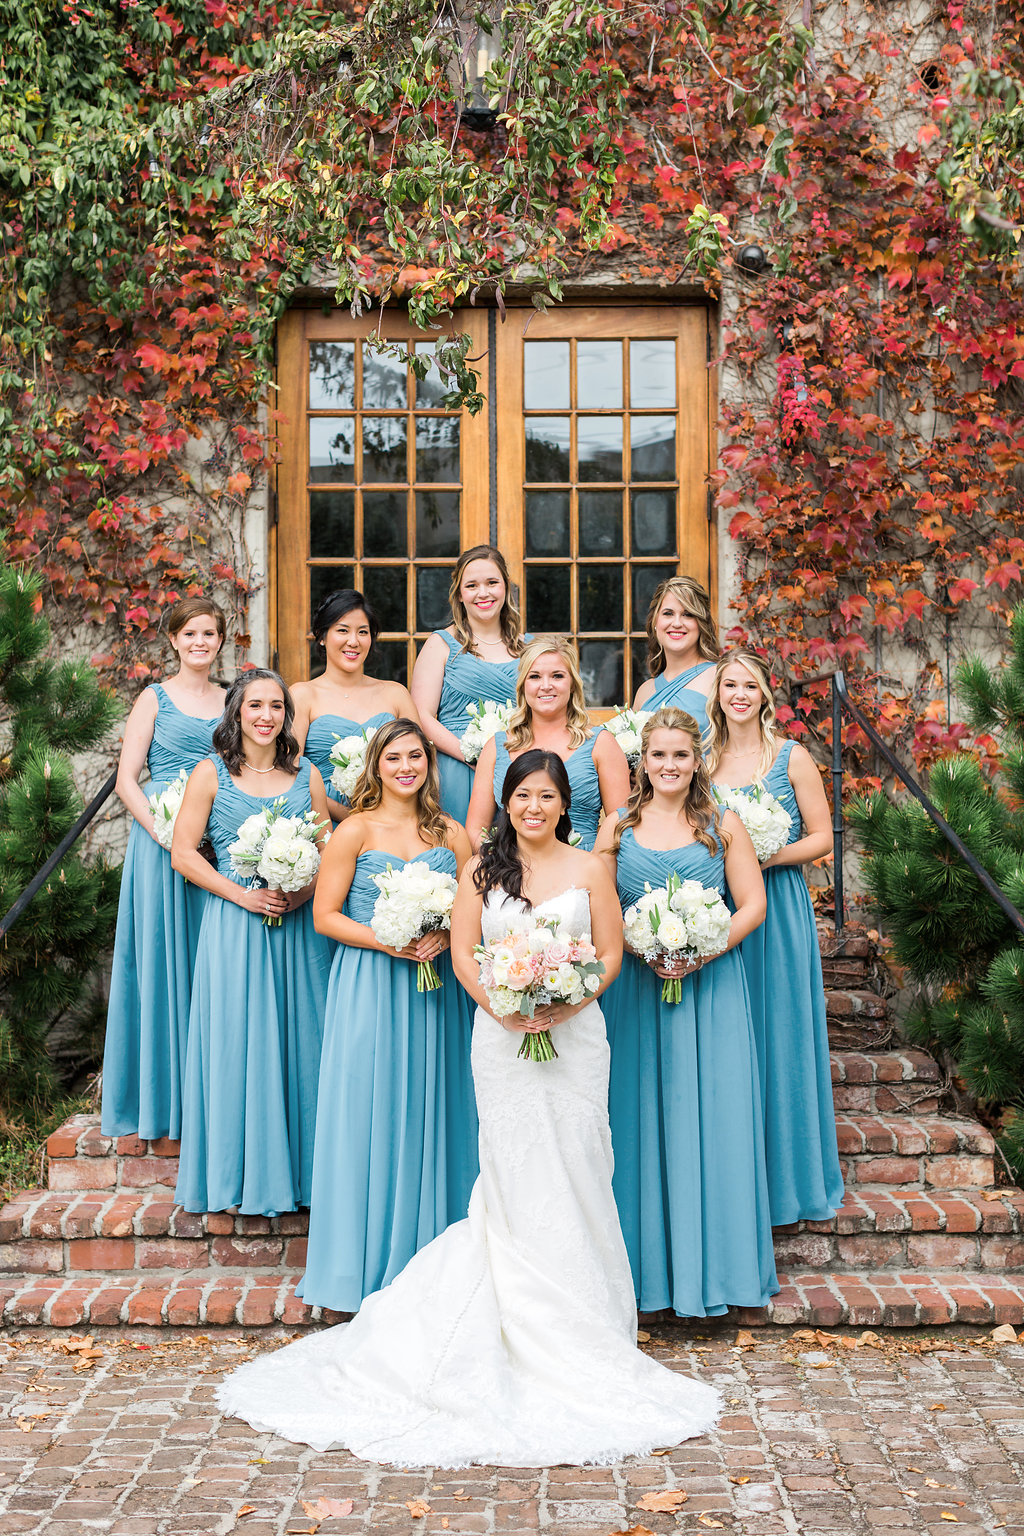 Summerour Studio Wedding - Atlanta Wedding Venue — The Overwhelmed Bride Wedding Blog